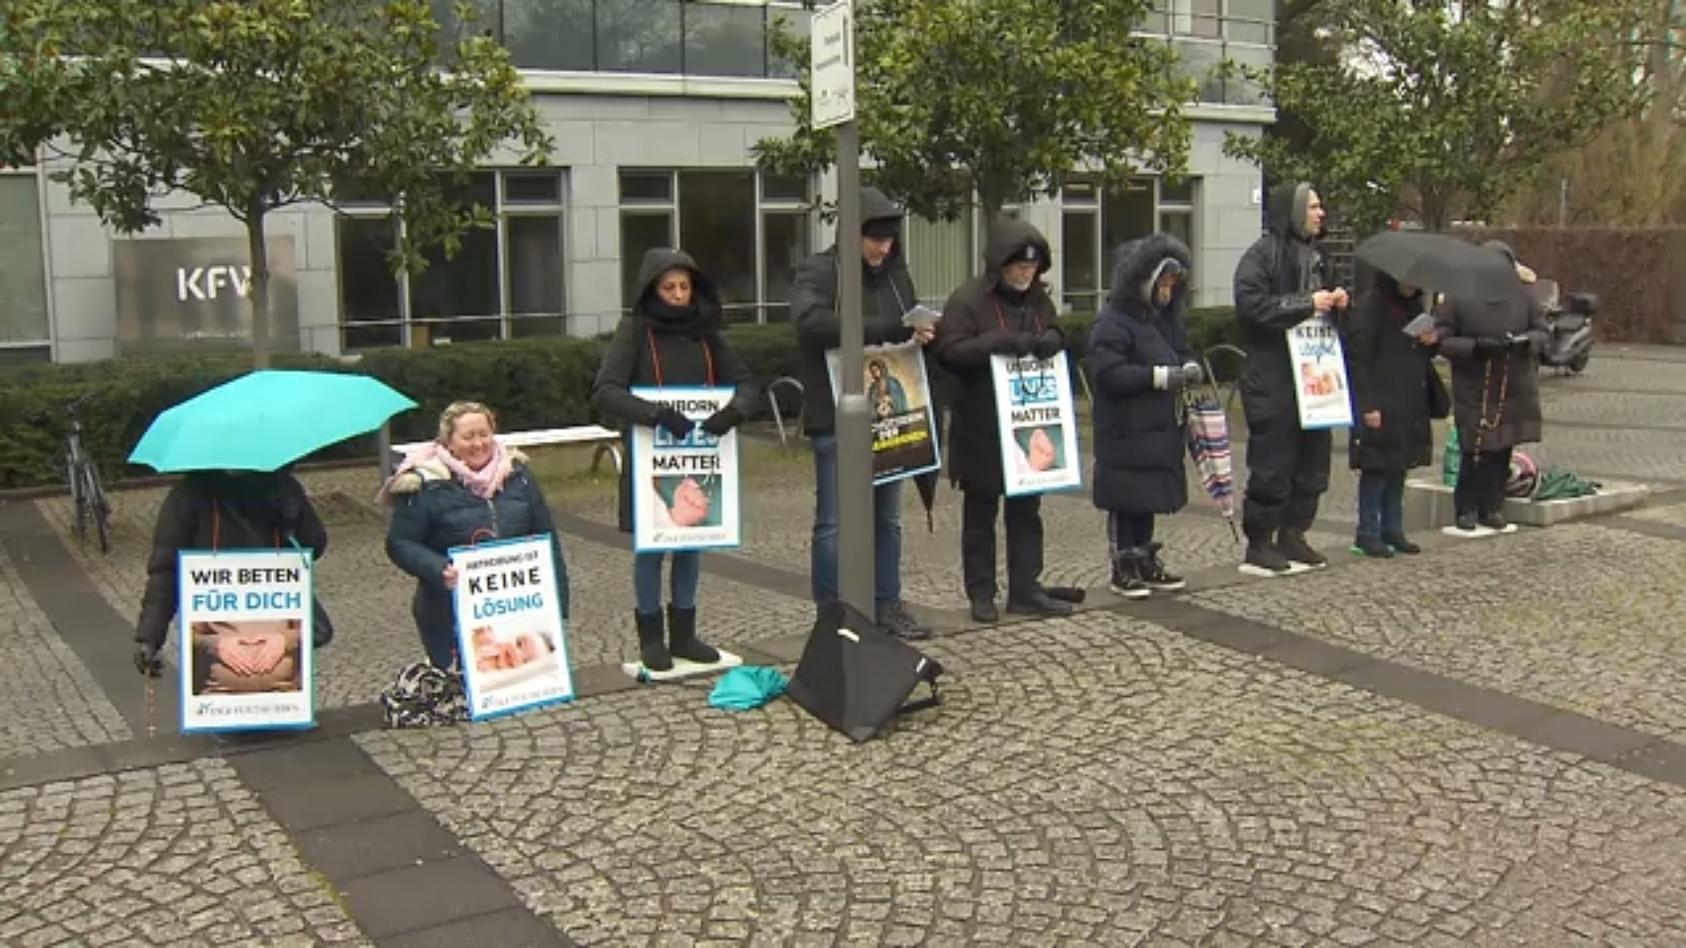 Religiöser Protest gegen Abtreibung "Absichten nicht friedlich!"